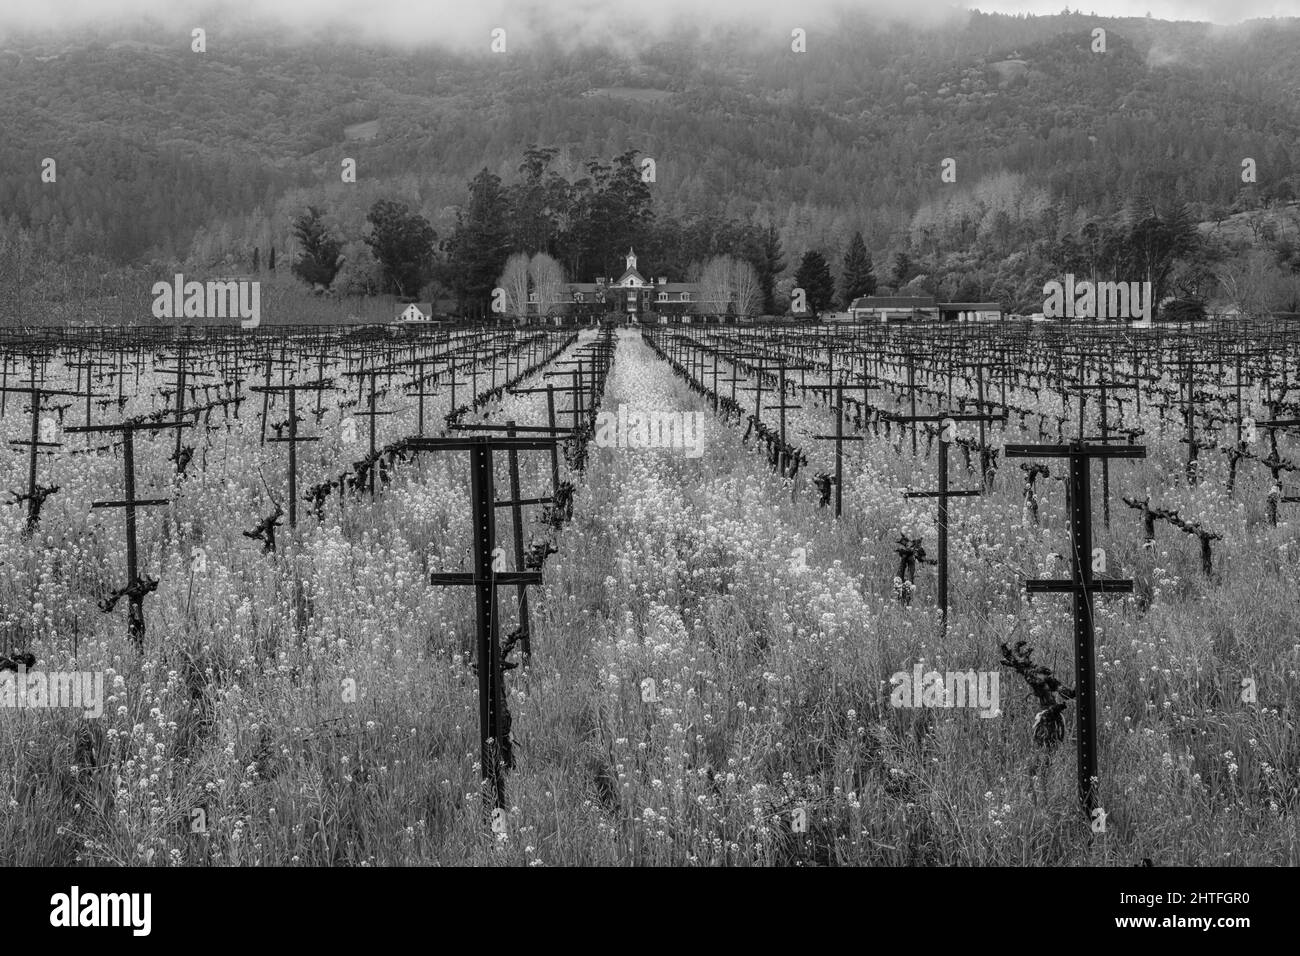 Un paysage viticole avec un premier plan de fleurs de moutarde.Napa Valley, Californie. Banque D'Images